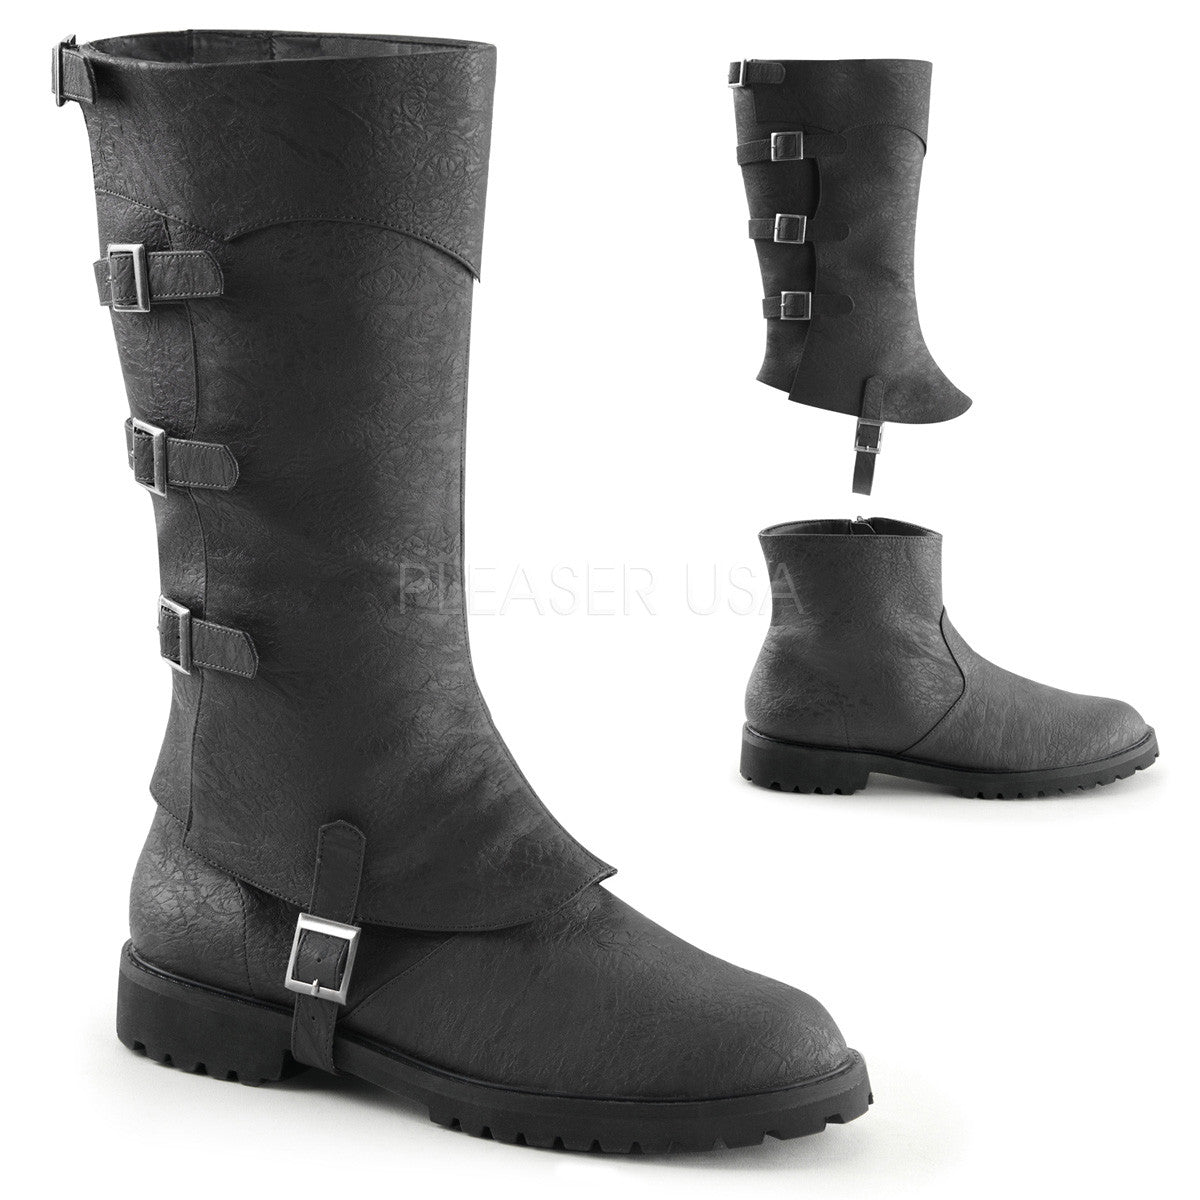 Men's Black  Renaissance Medieval Pirate Boots - Shoecup.com